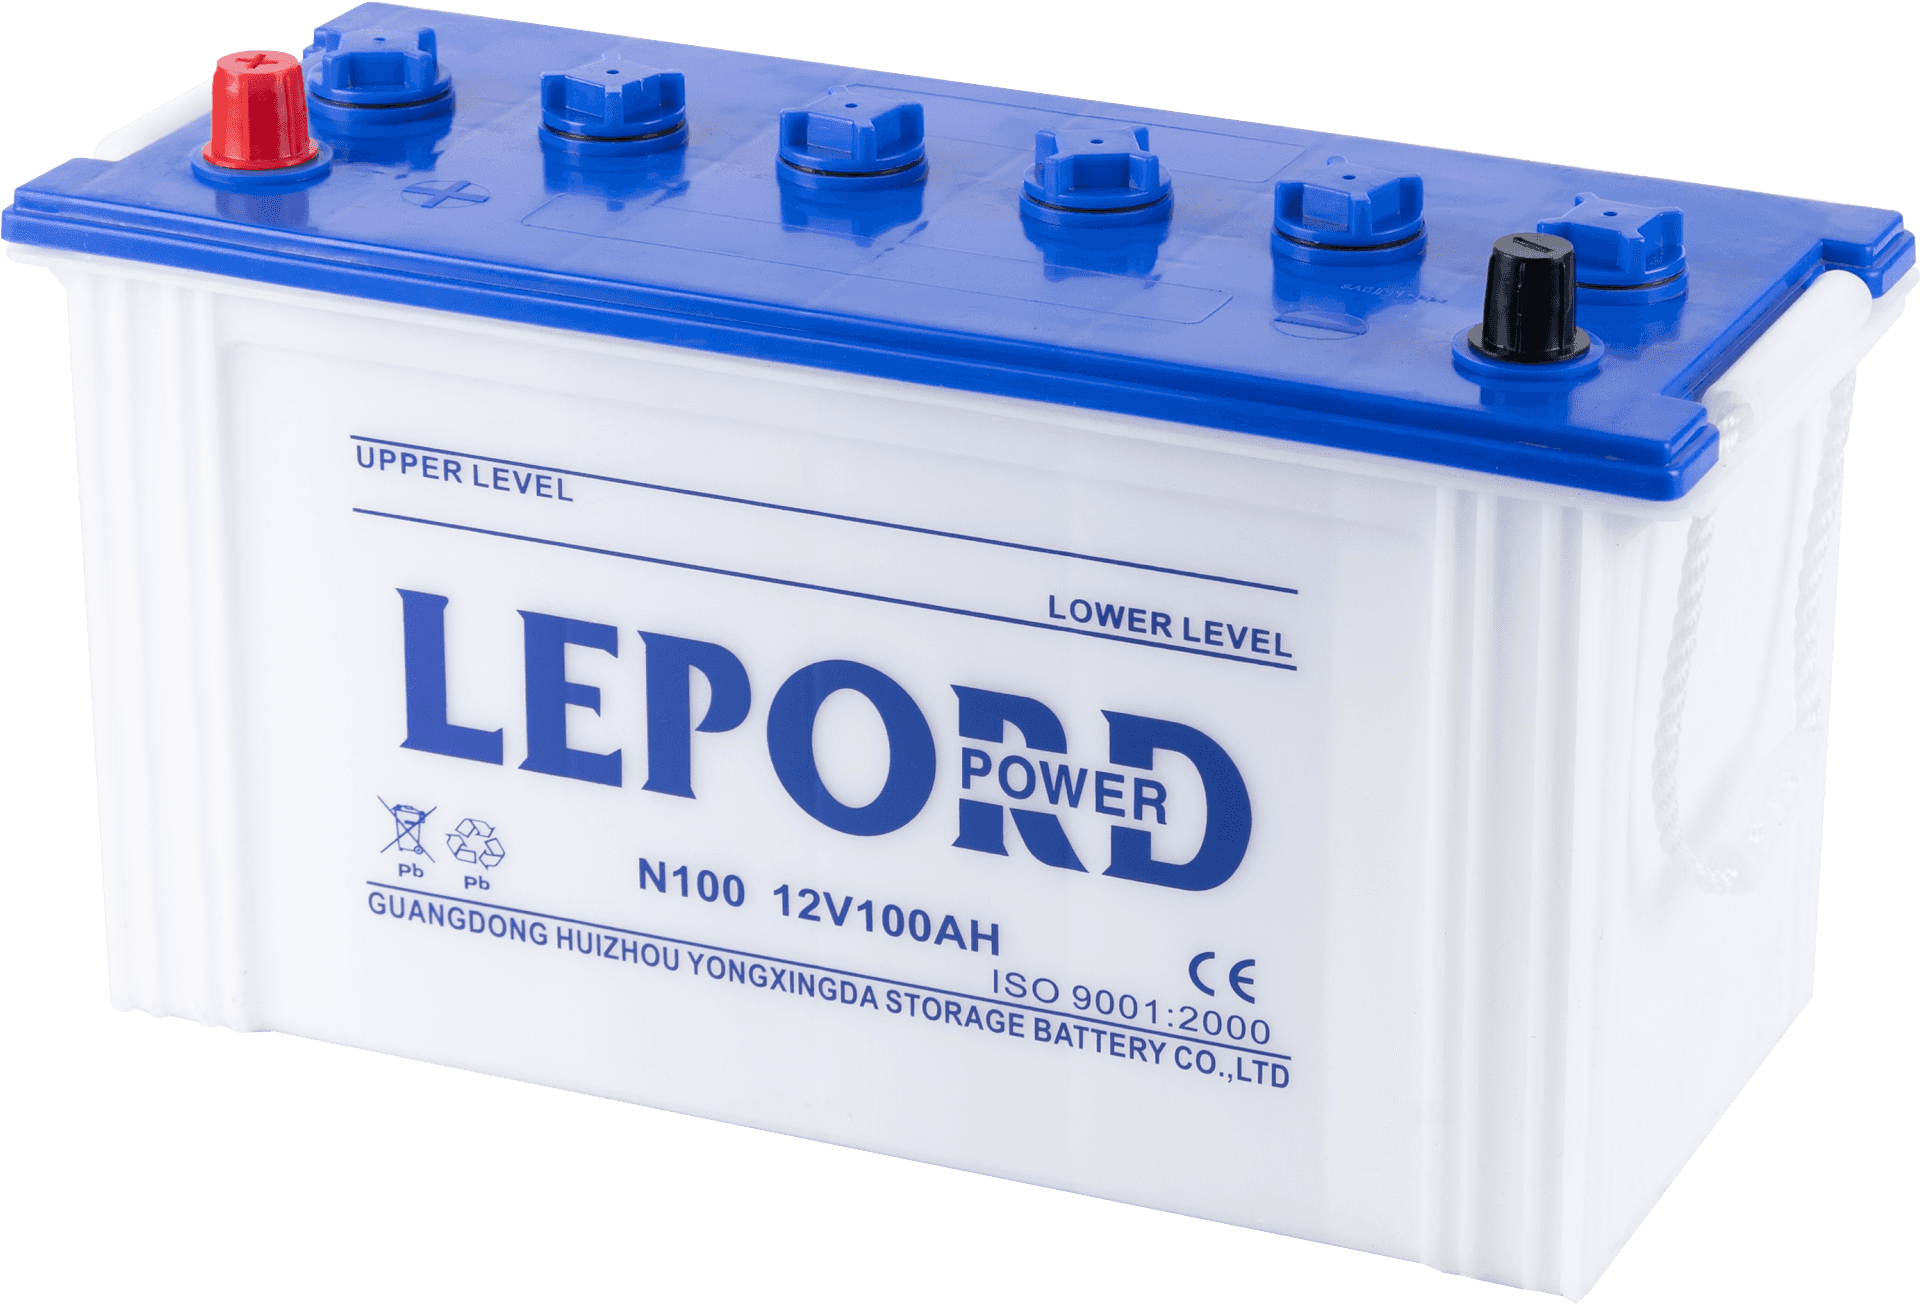 L E P O R D12 V100 Ah Sealed Lead Acid Battery PNG image